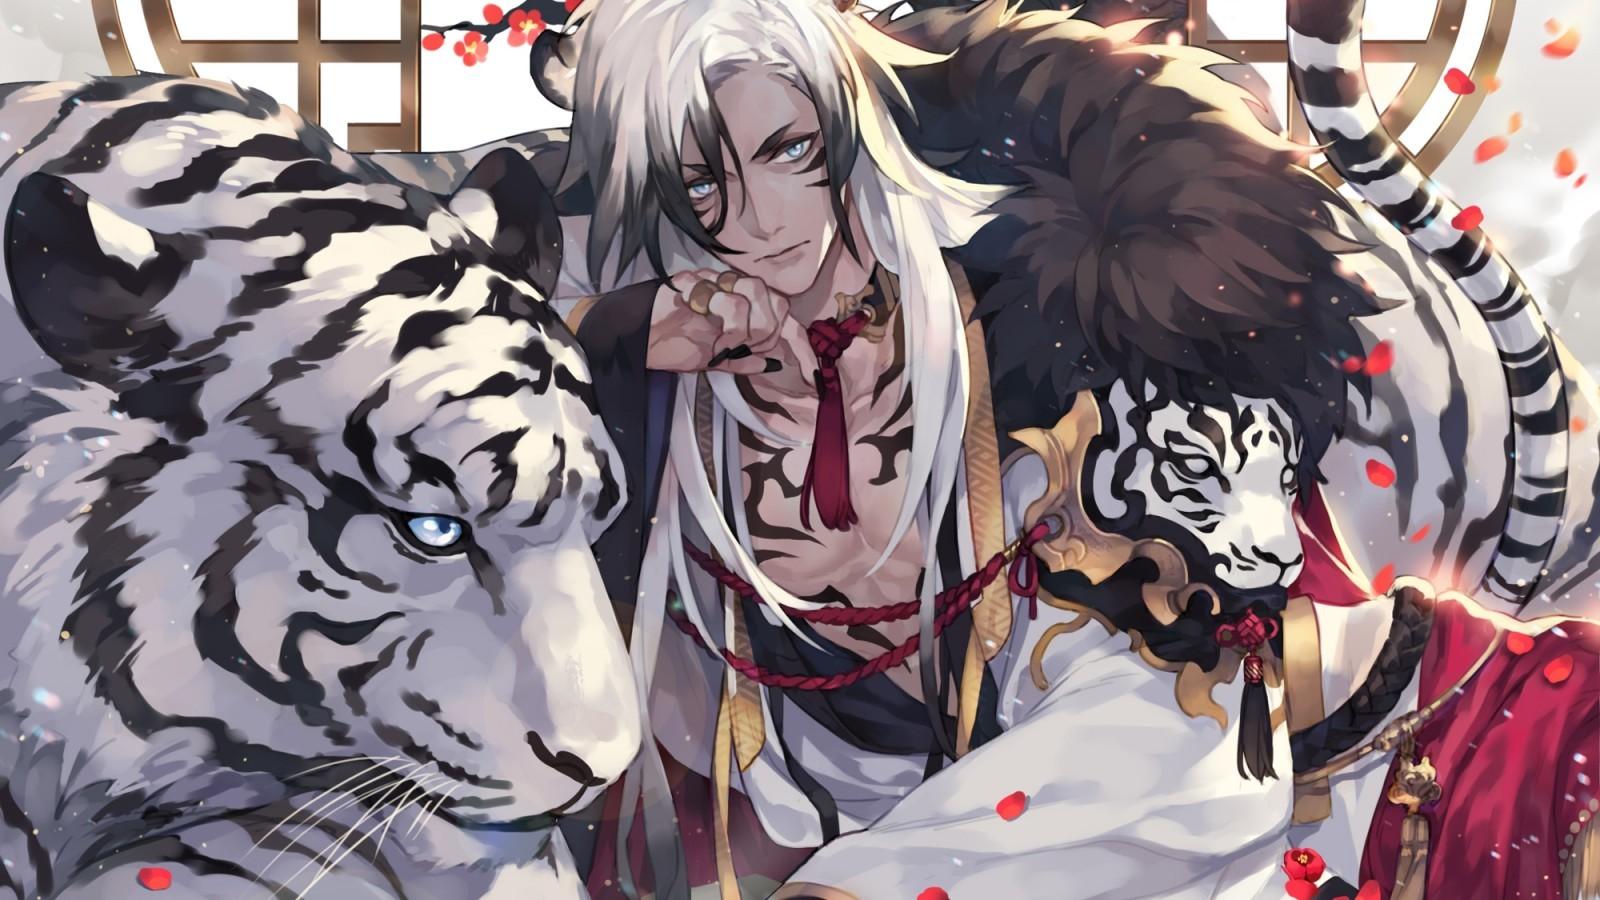 Download 1600x900 White Tiger, Anime Boy, Shoujo, Red